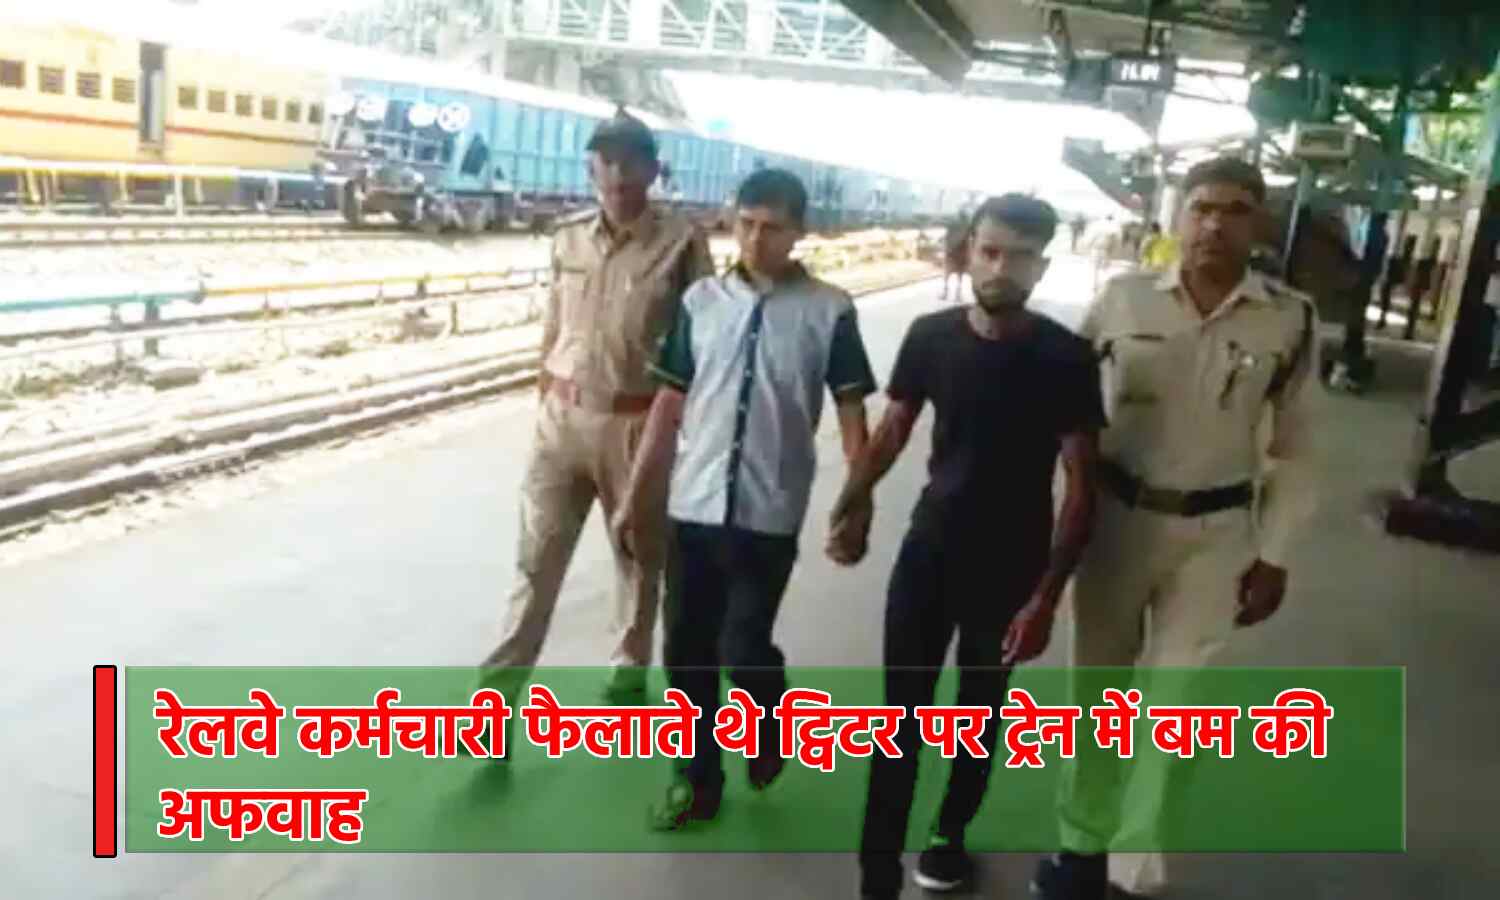 Madhya Pradesh News : रेलवे कर्मचारी ही फैलाते थे ट्रेन में बम होने की अफवाह, वजह जान कर हो जाएंगे हैरान